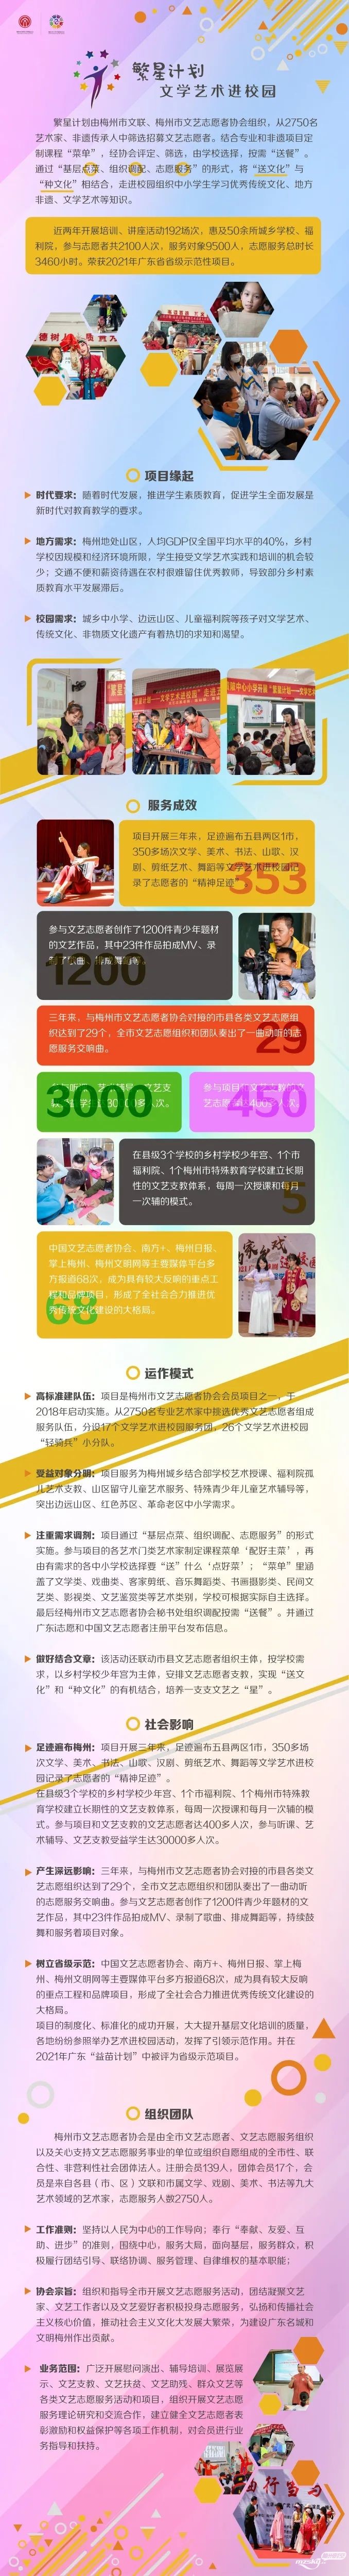 梅州"繁星计划"项目获第六届中国青年志愿服务项目大赛铜奖